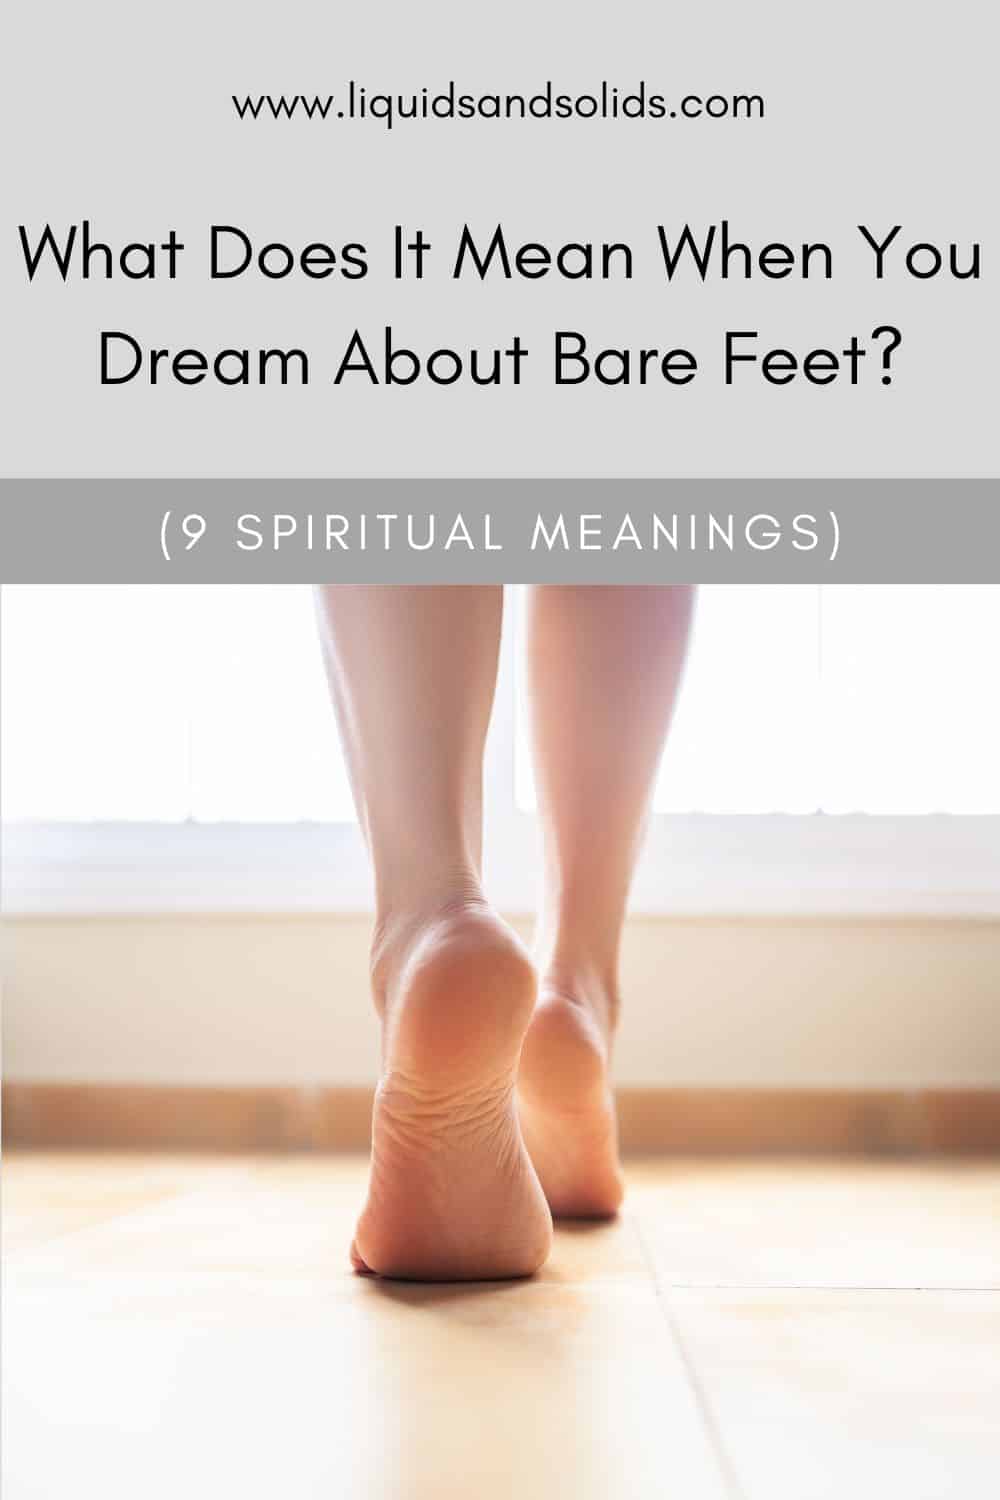  რას ნიშნავს, როცა შიშველ ფეხზე ოცნებობ? (9 სულიერი მნიშვნელობა)